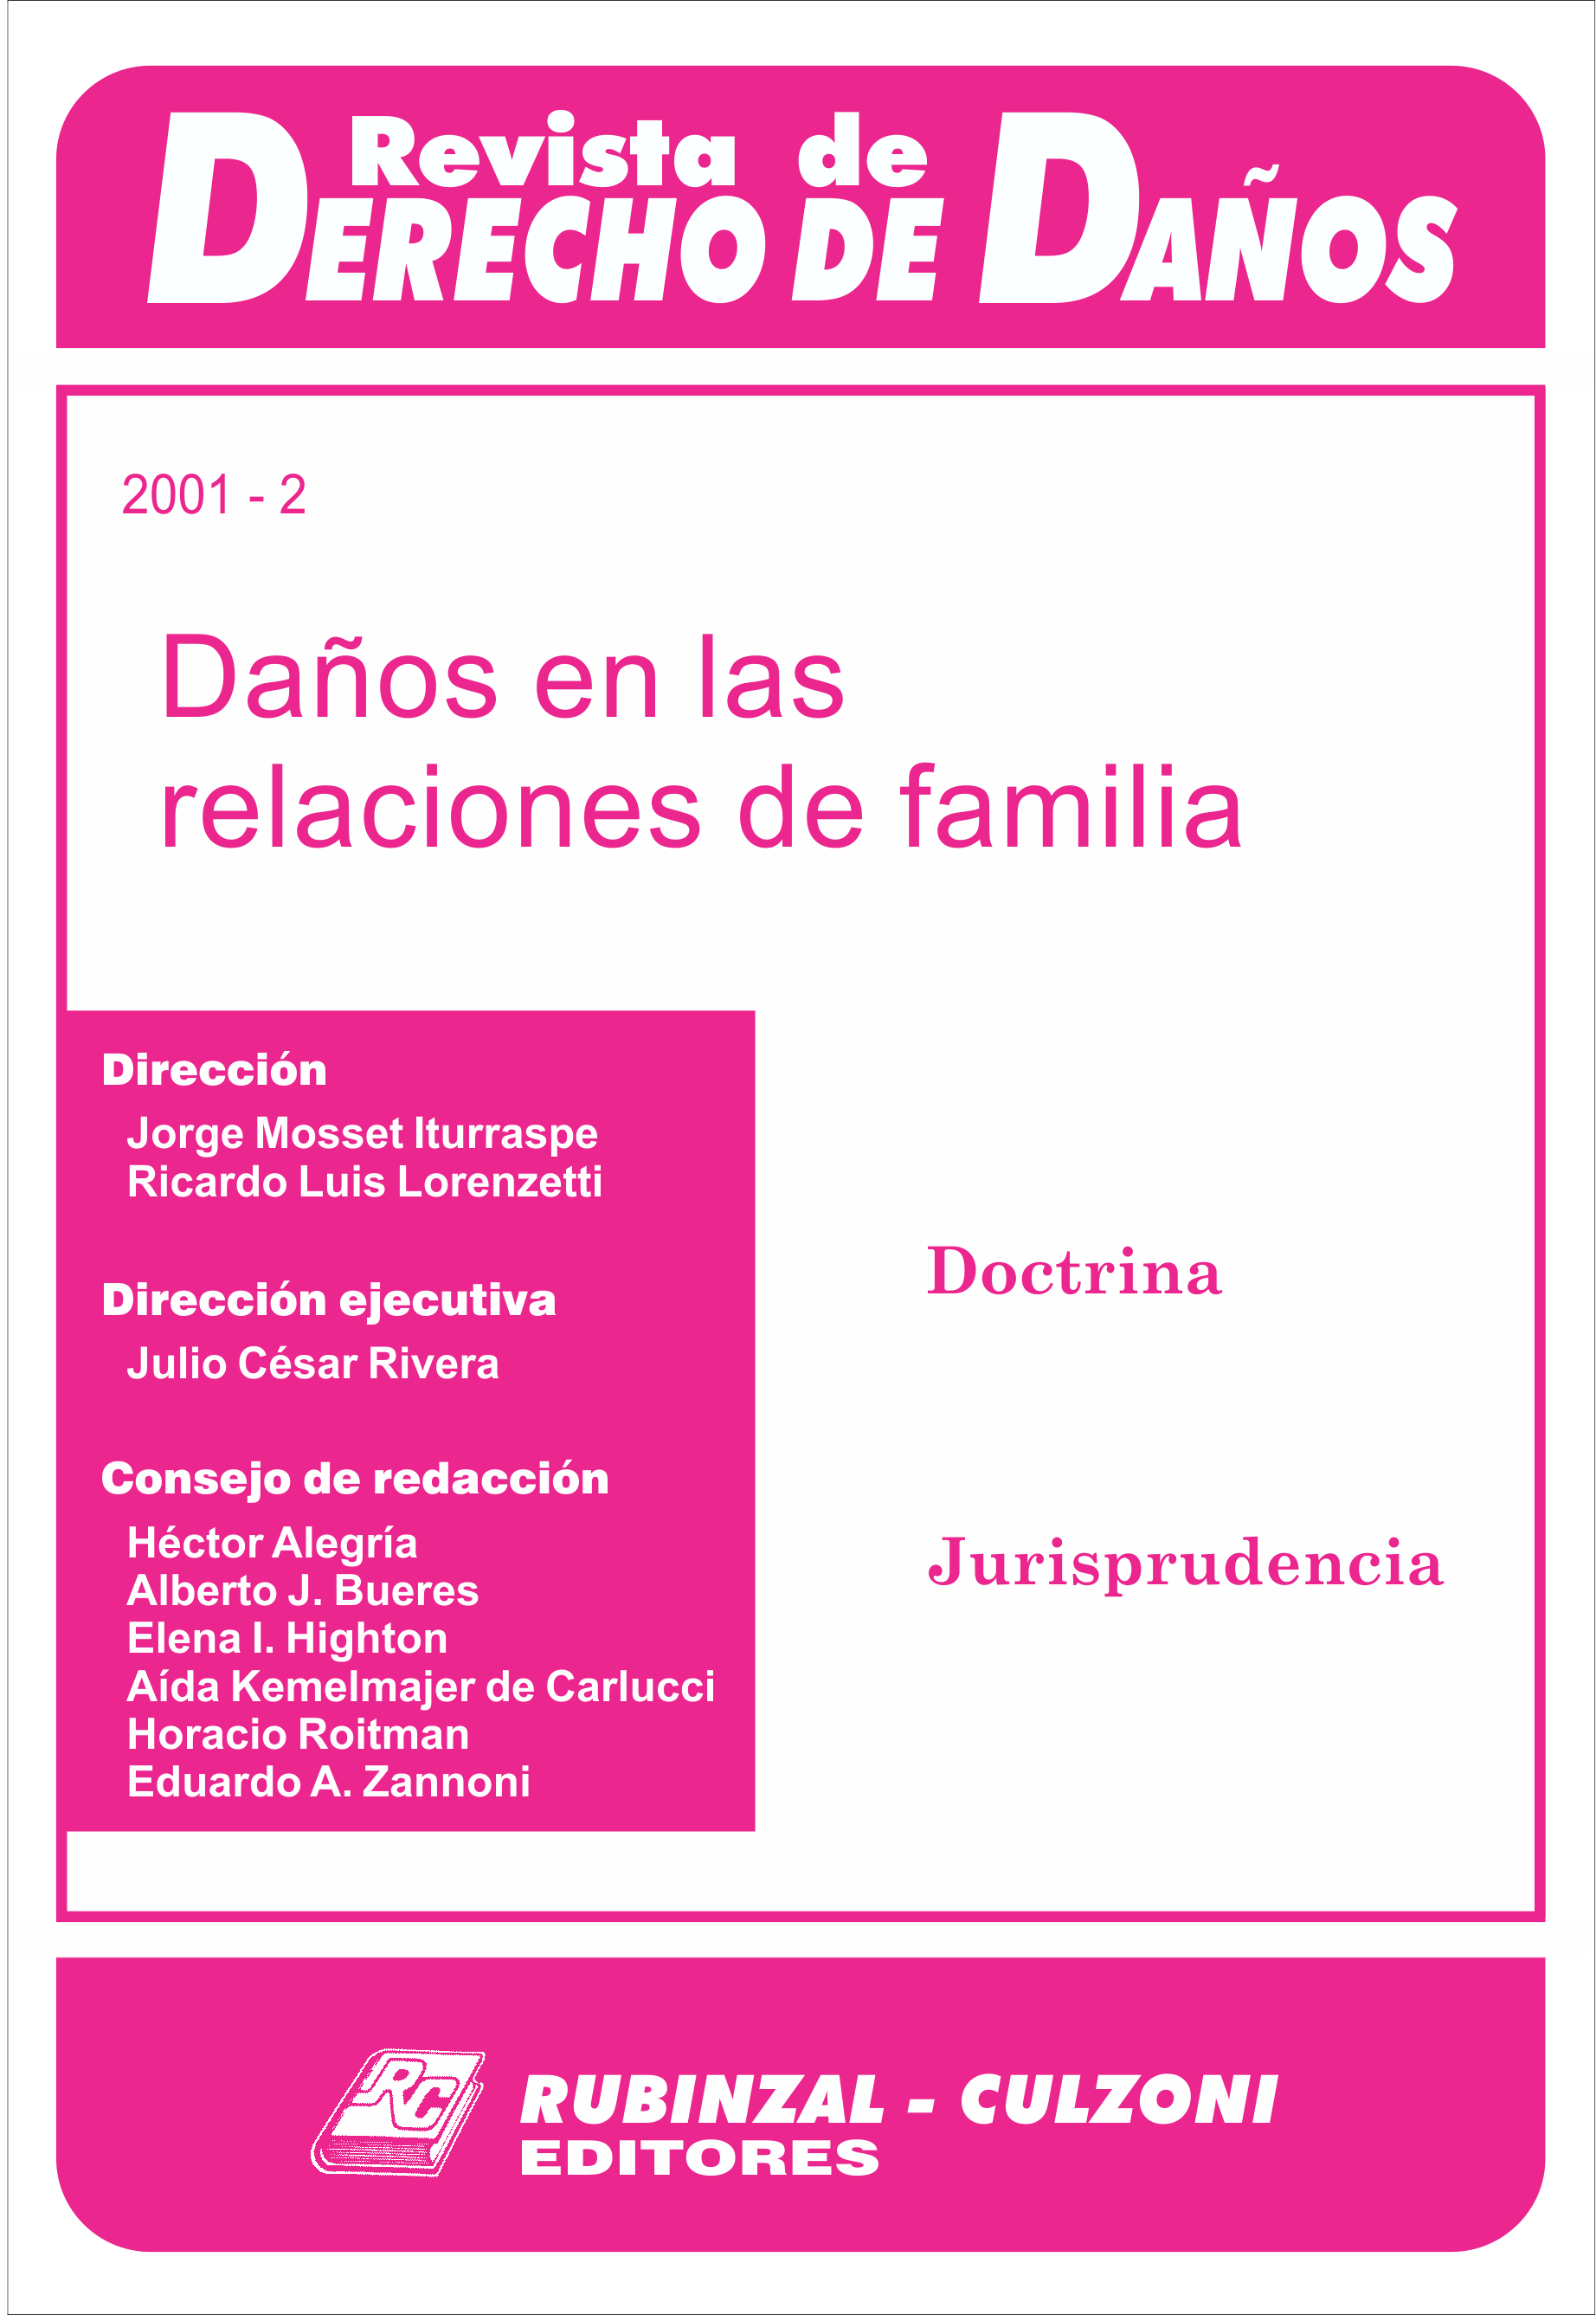 Revista de Derecho de Daños - Daños en las relaciones de familia.